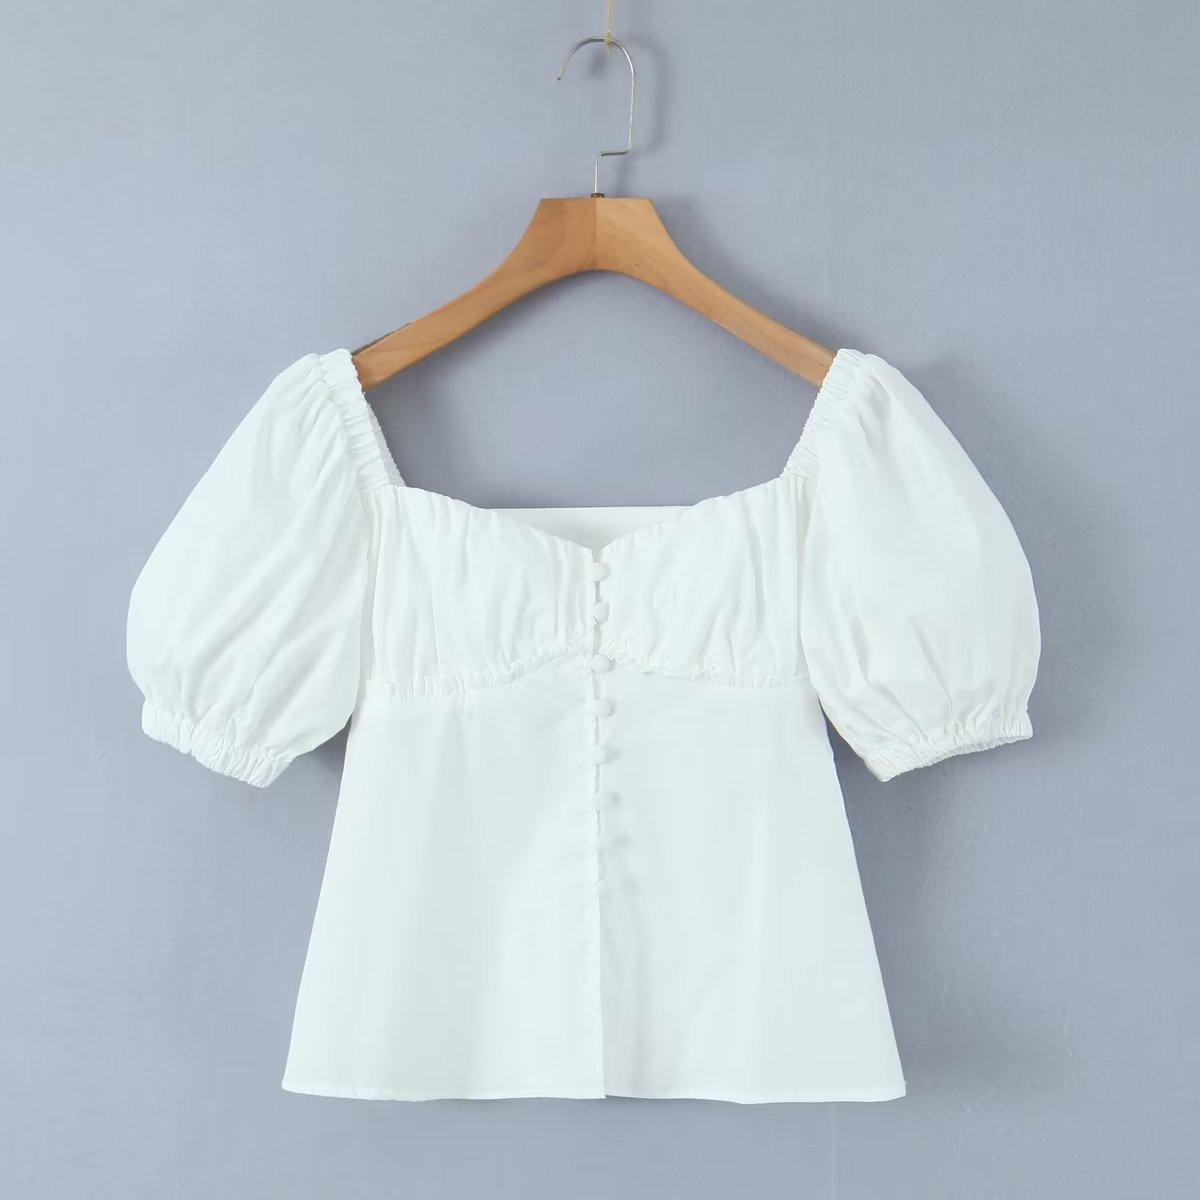 白色短袖衬衫女短款收腰泡泡袖衬衣温柔夏季新款法式上衣甜美复古